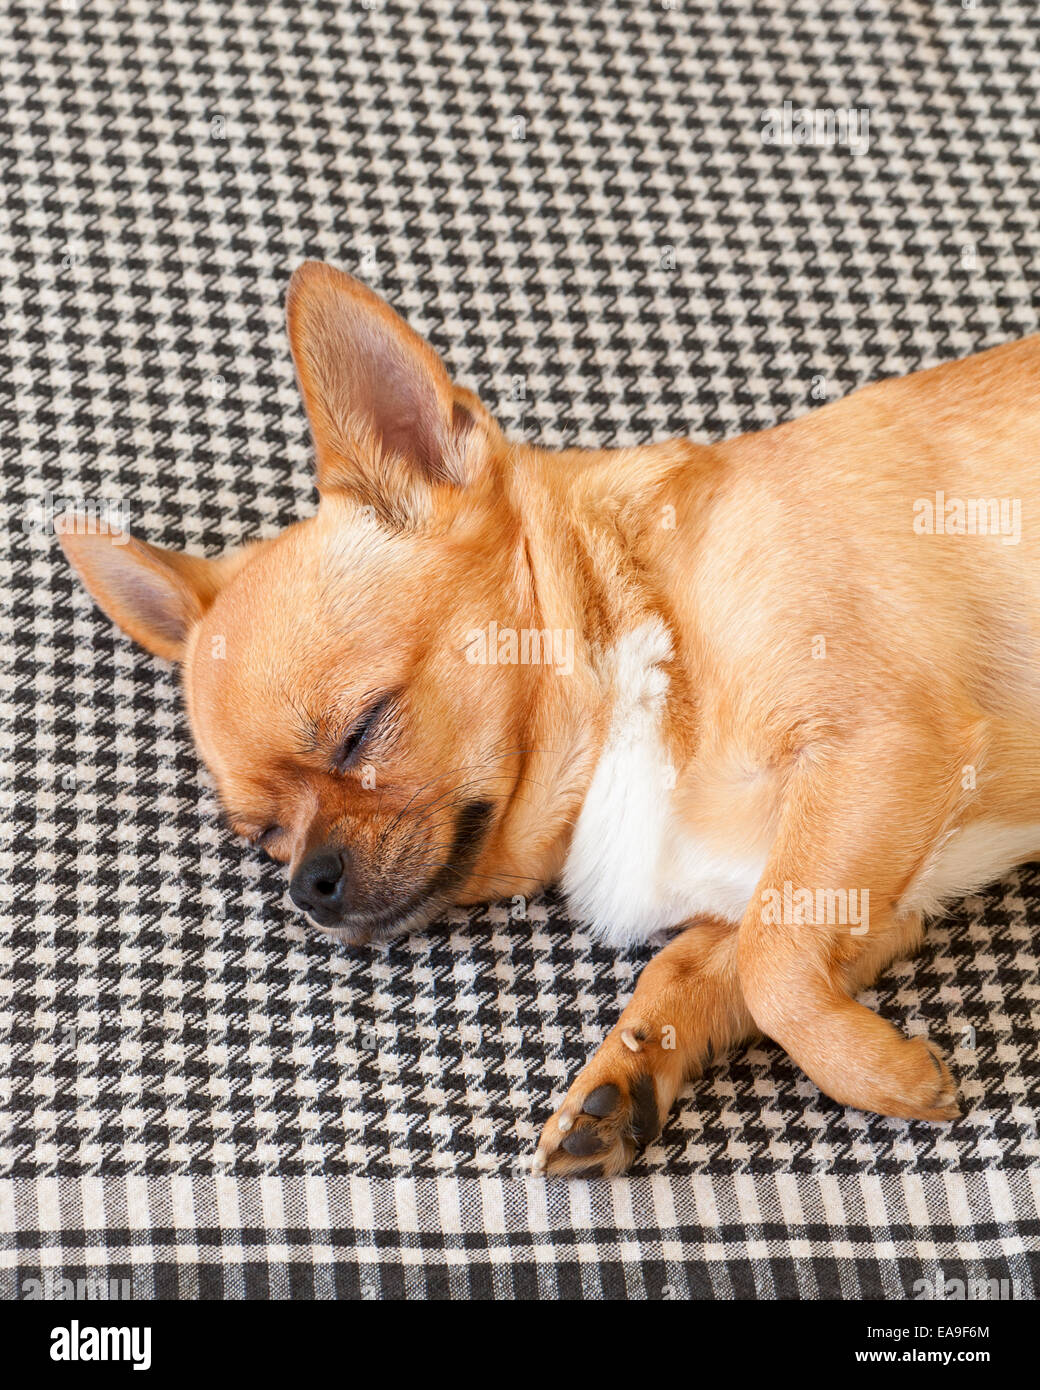 Chihuahua rouge couchage Chien sur Shemagh Motif de fond. Libre. Banque D'Images